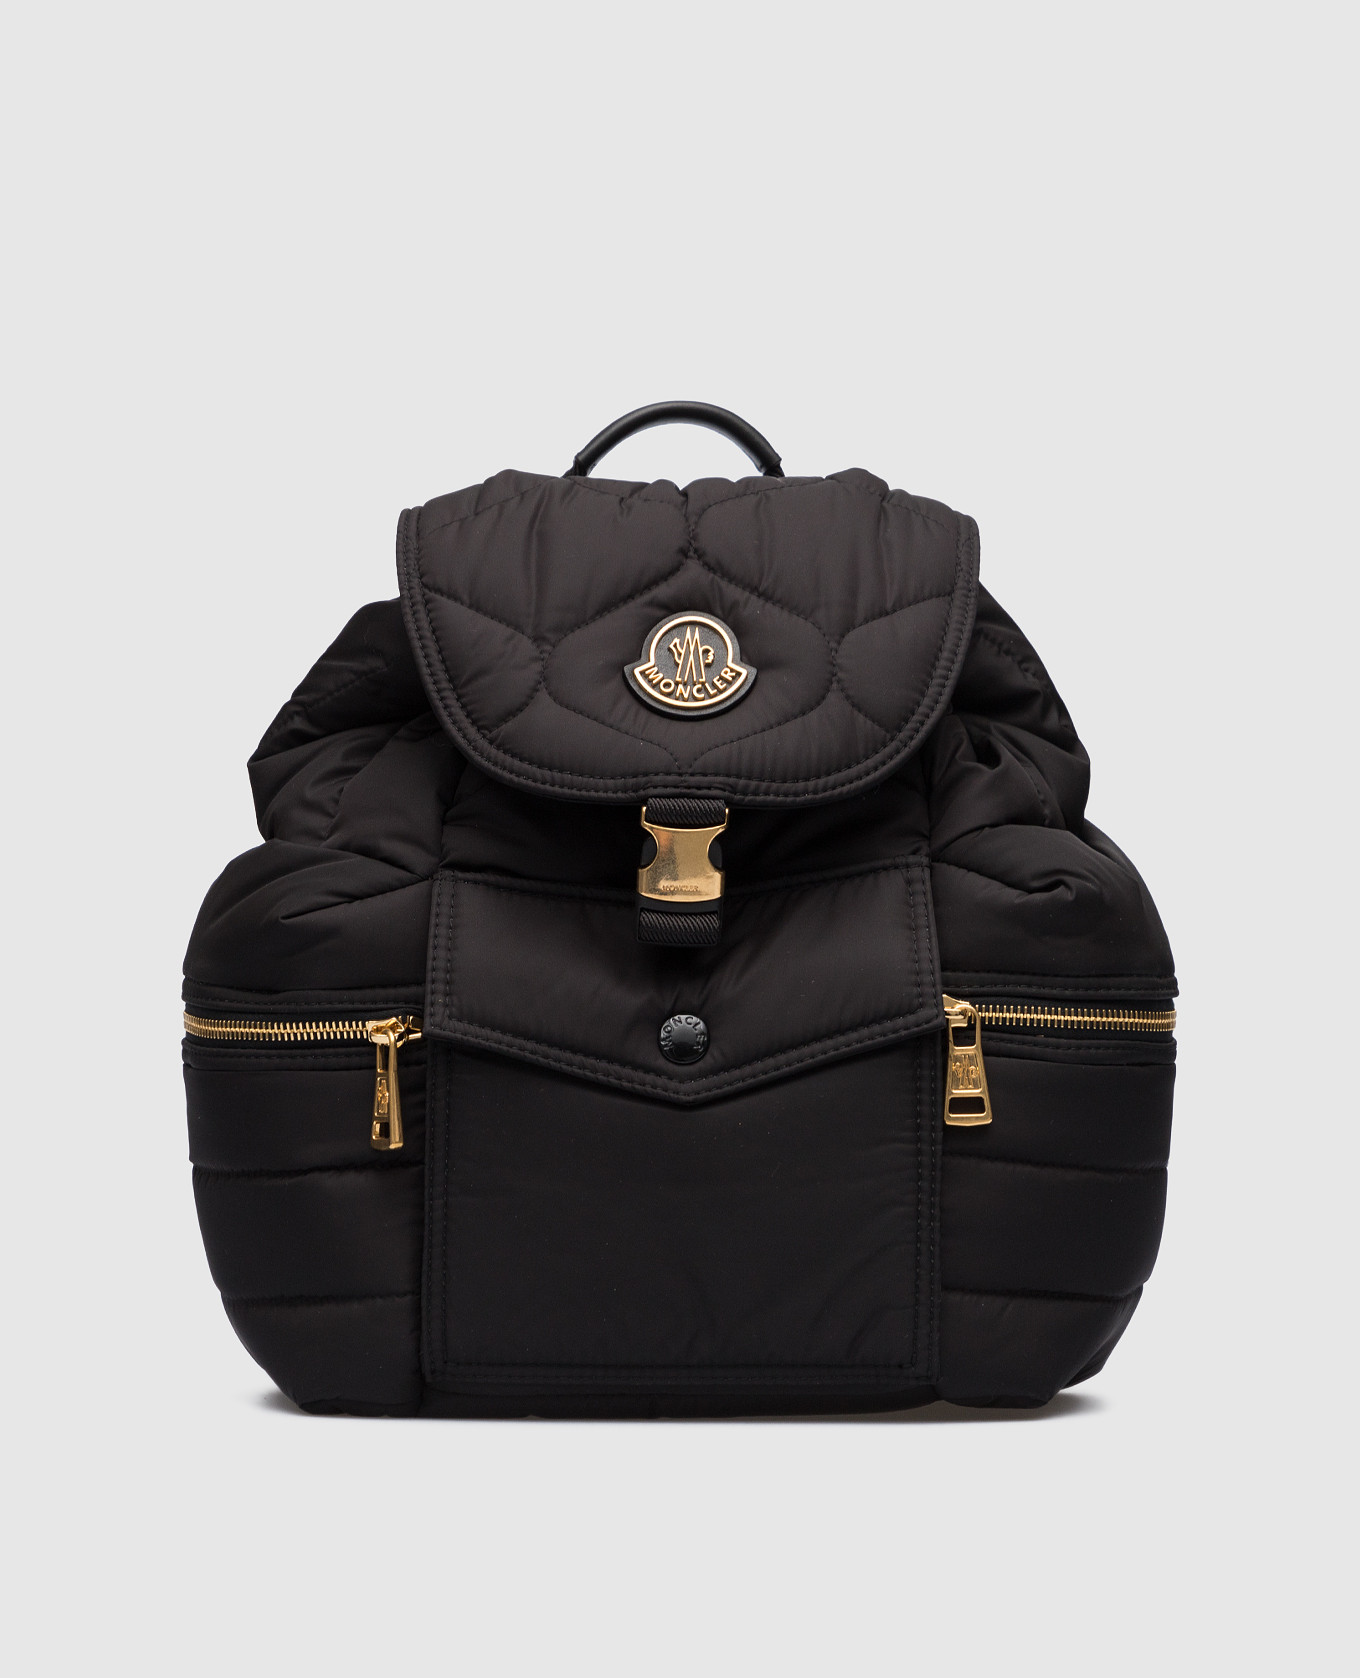 Черный стеганый рюкзак Astro с логотипом патча.